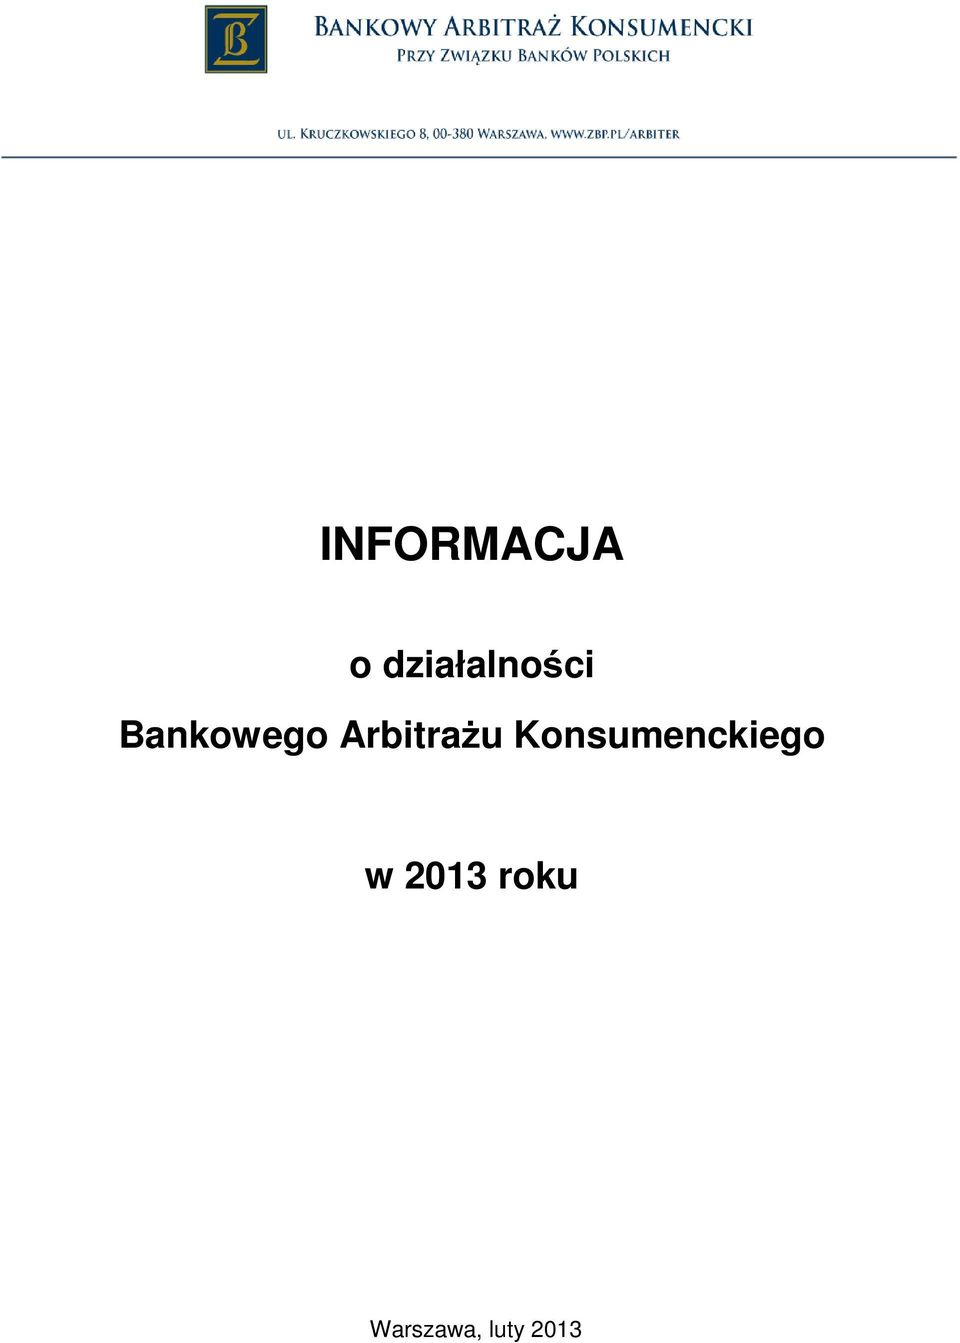 INFORMACJA. o działalności Bankowego Arbitrażu Konsumenckiego. w 2013 roku  - PDF Free Download